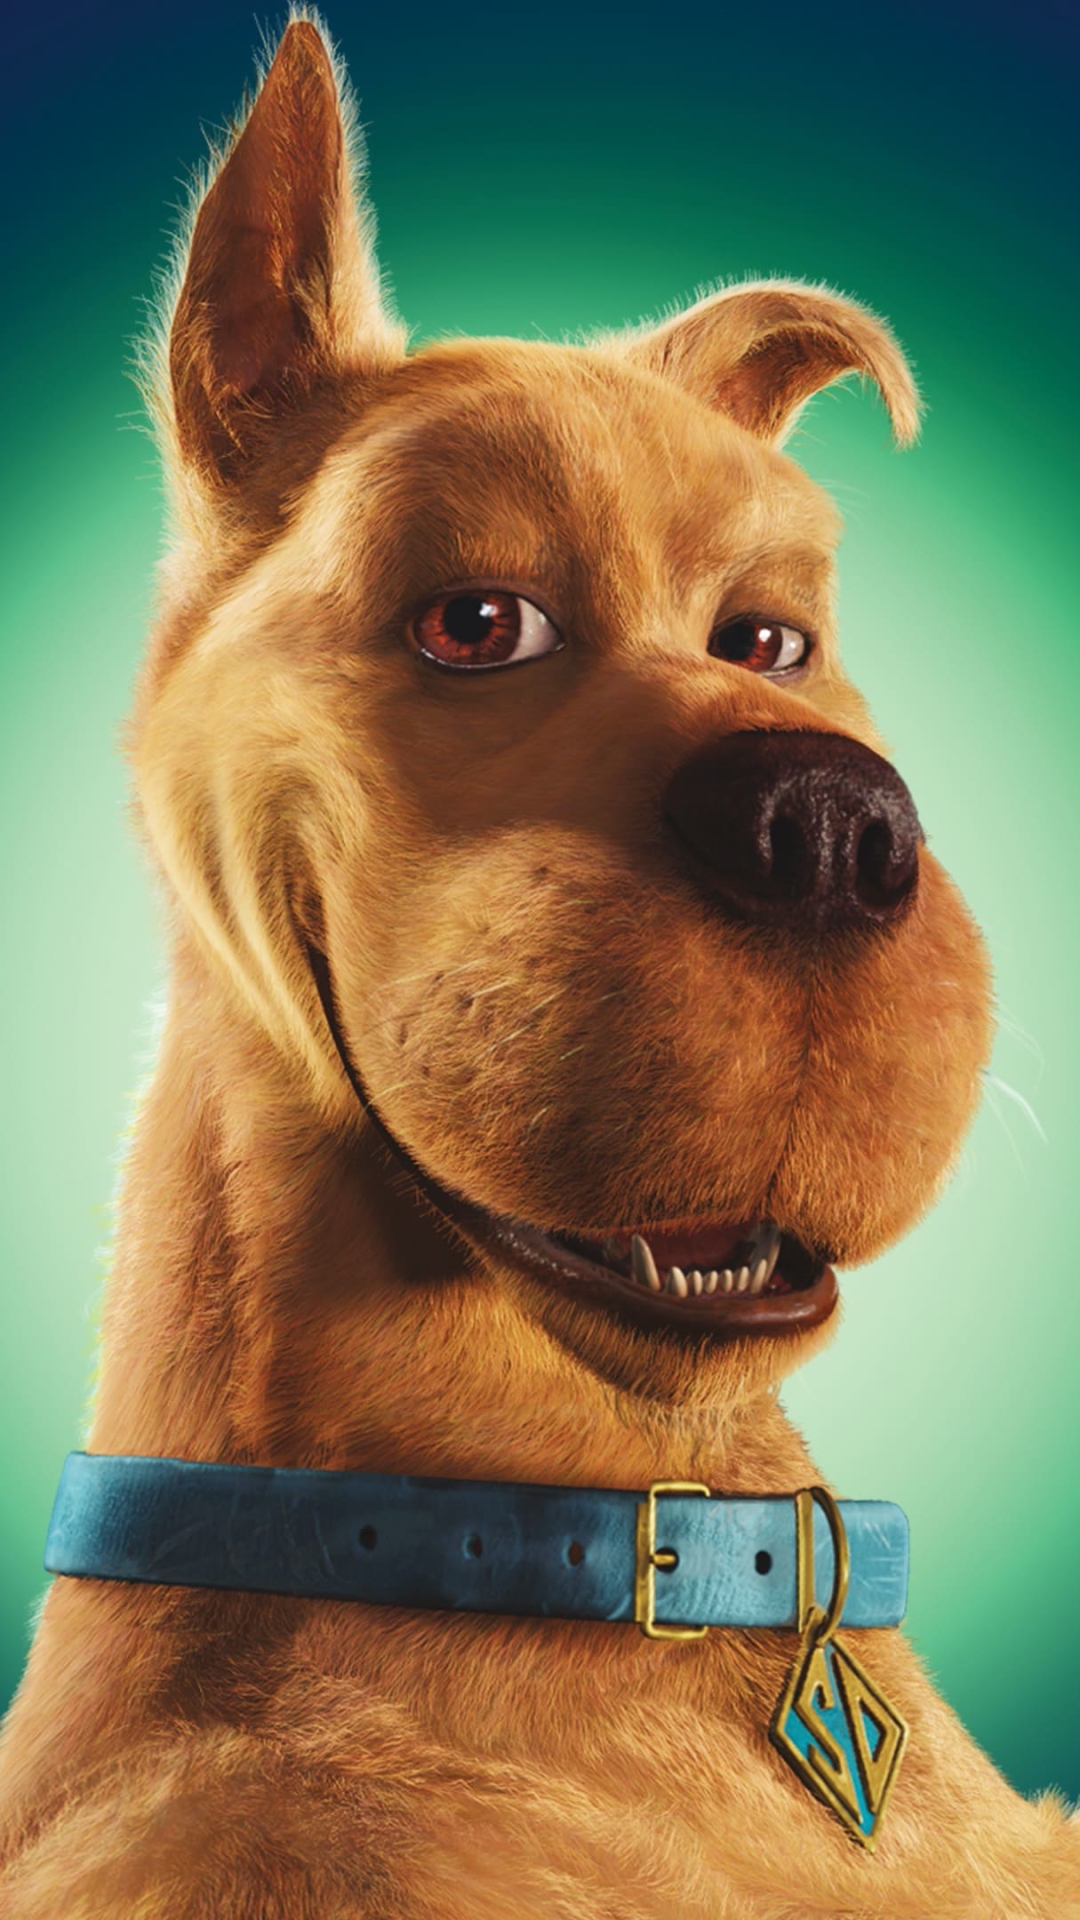 Descarga gratuita de fondo de pantalla para móvil de Películas, Scooby Doo.